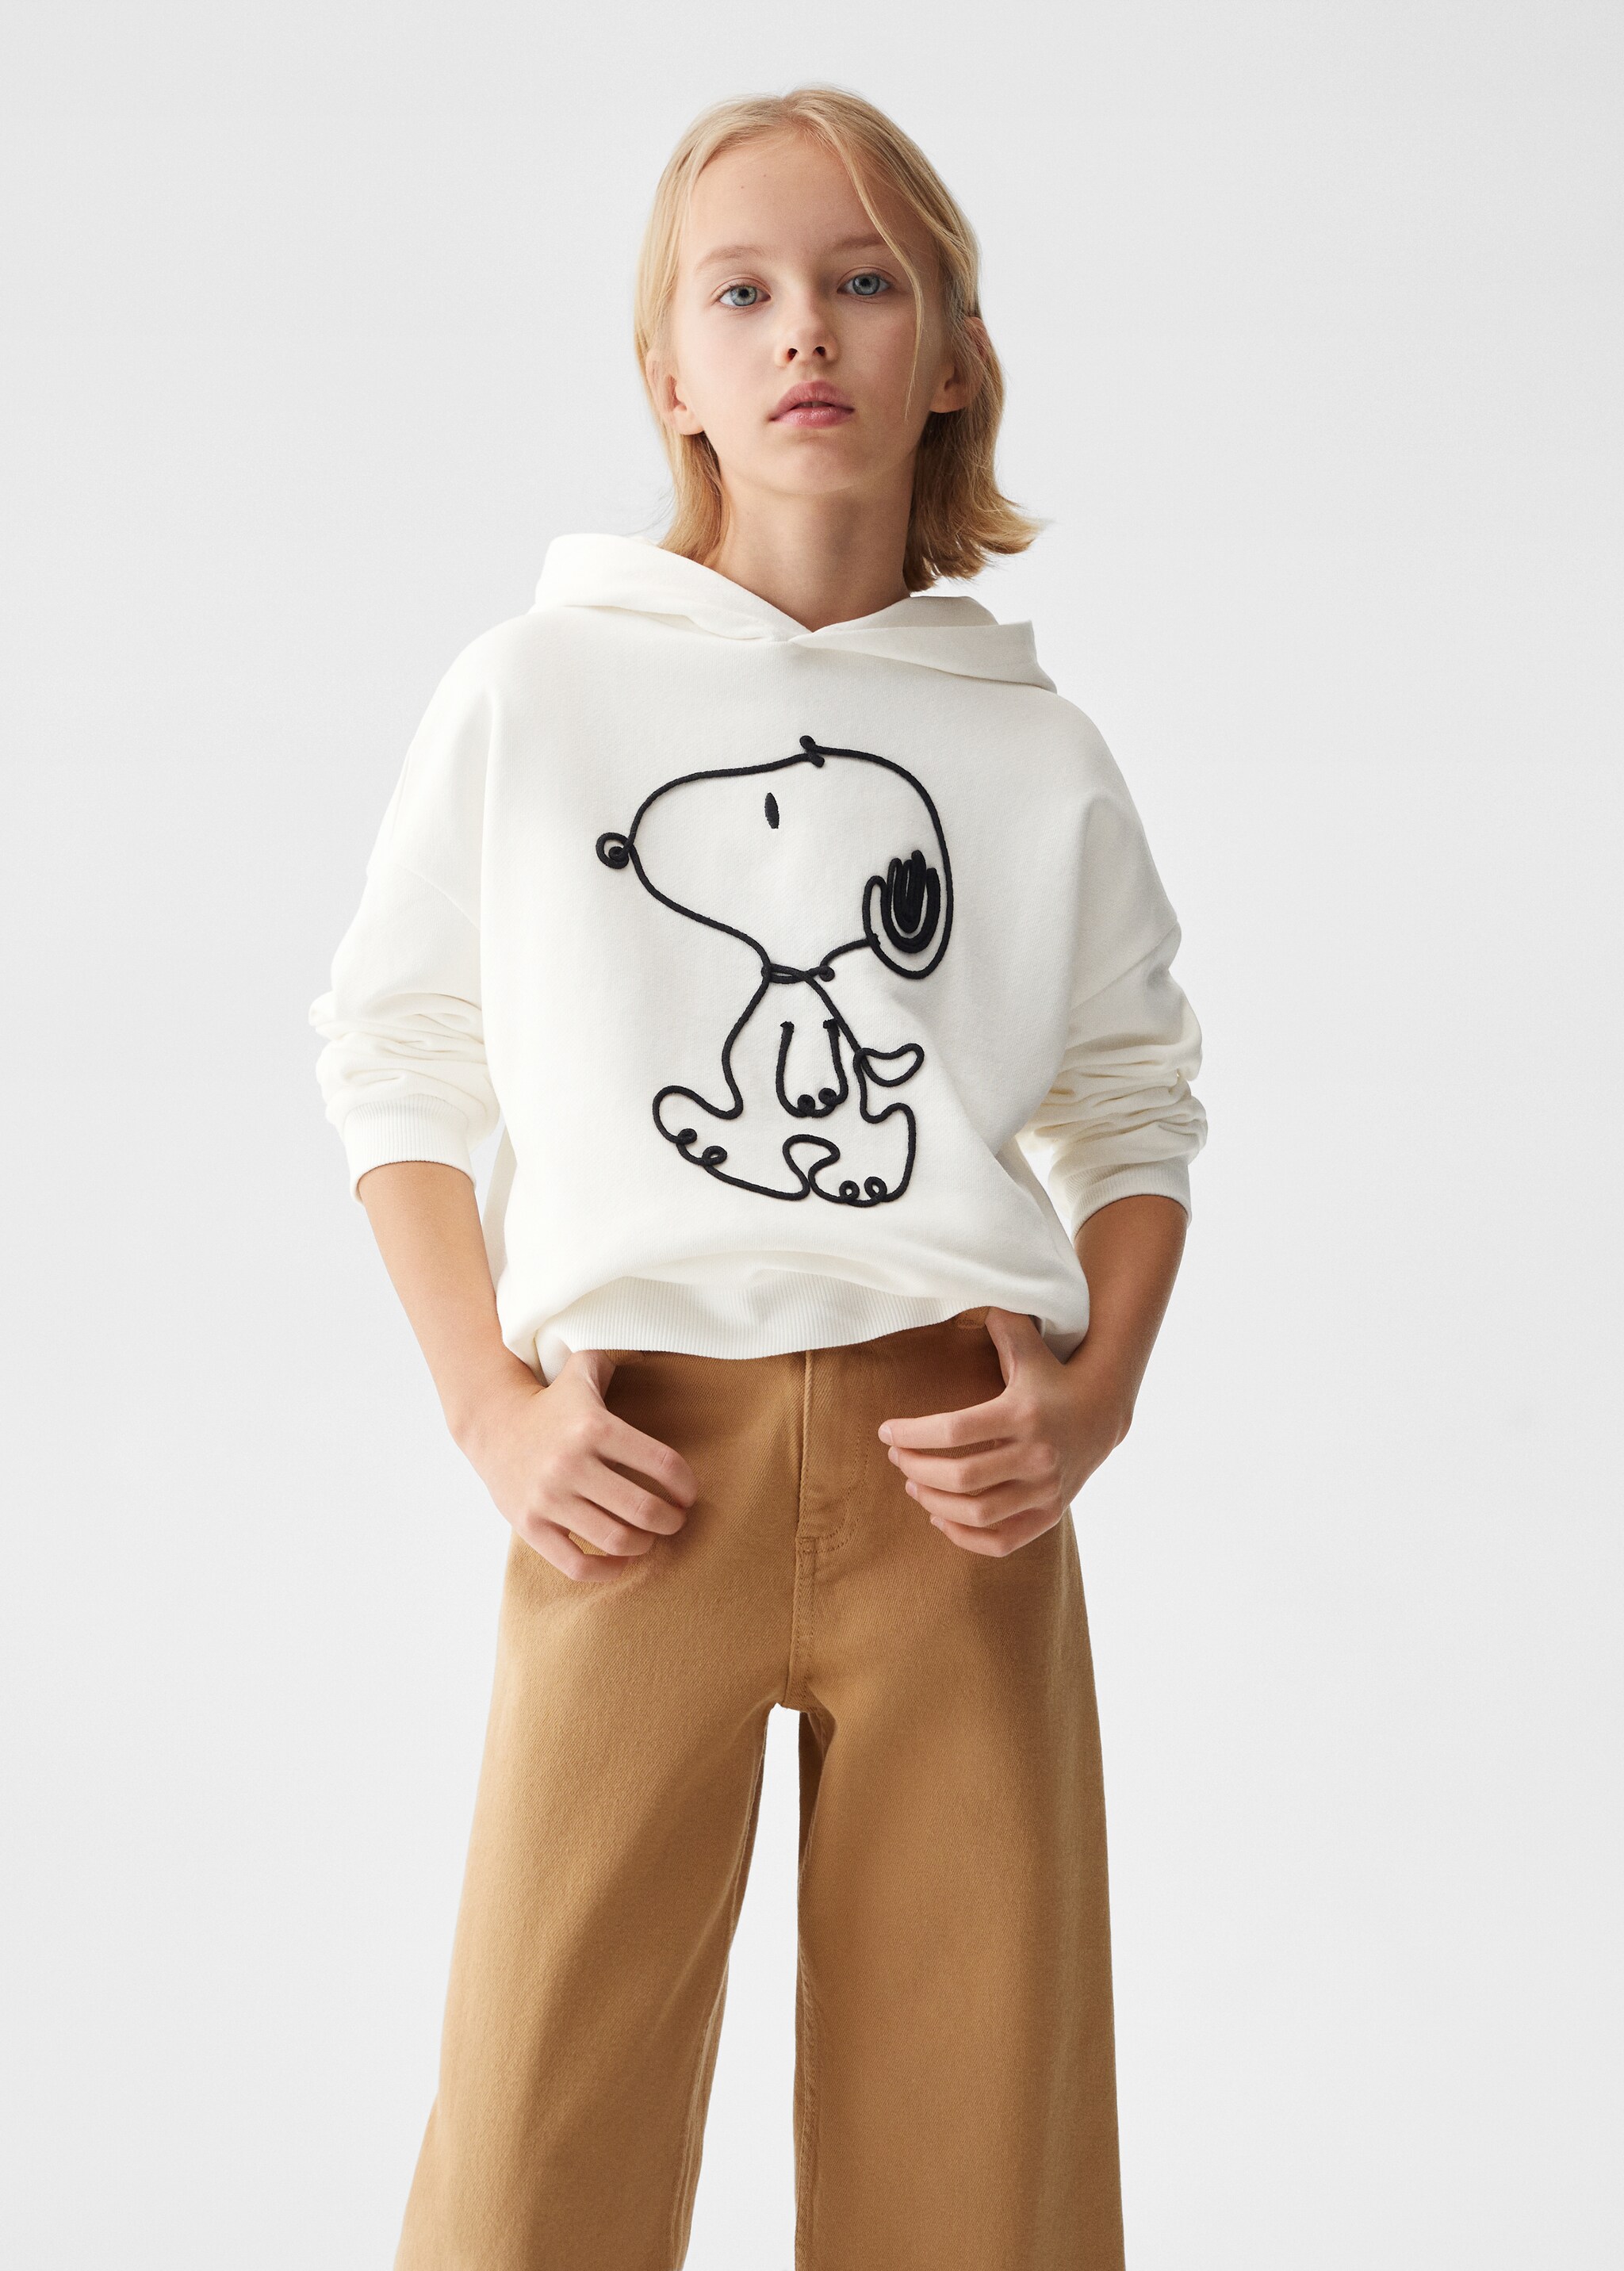 Sweatshirt do Snoopy com capuz - Plano médio